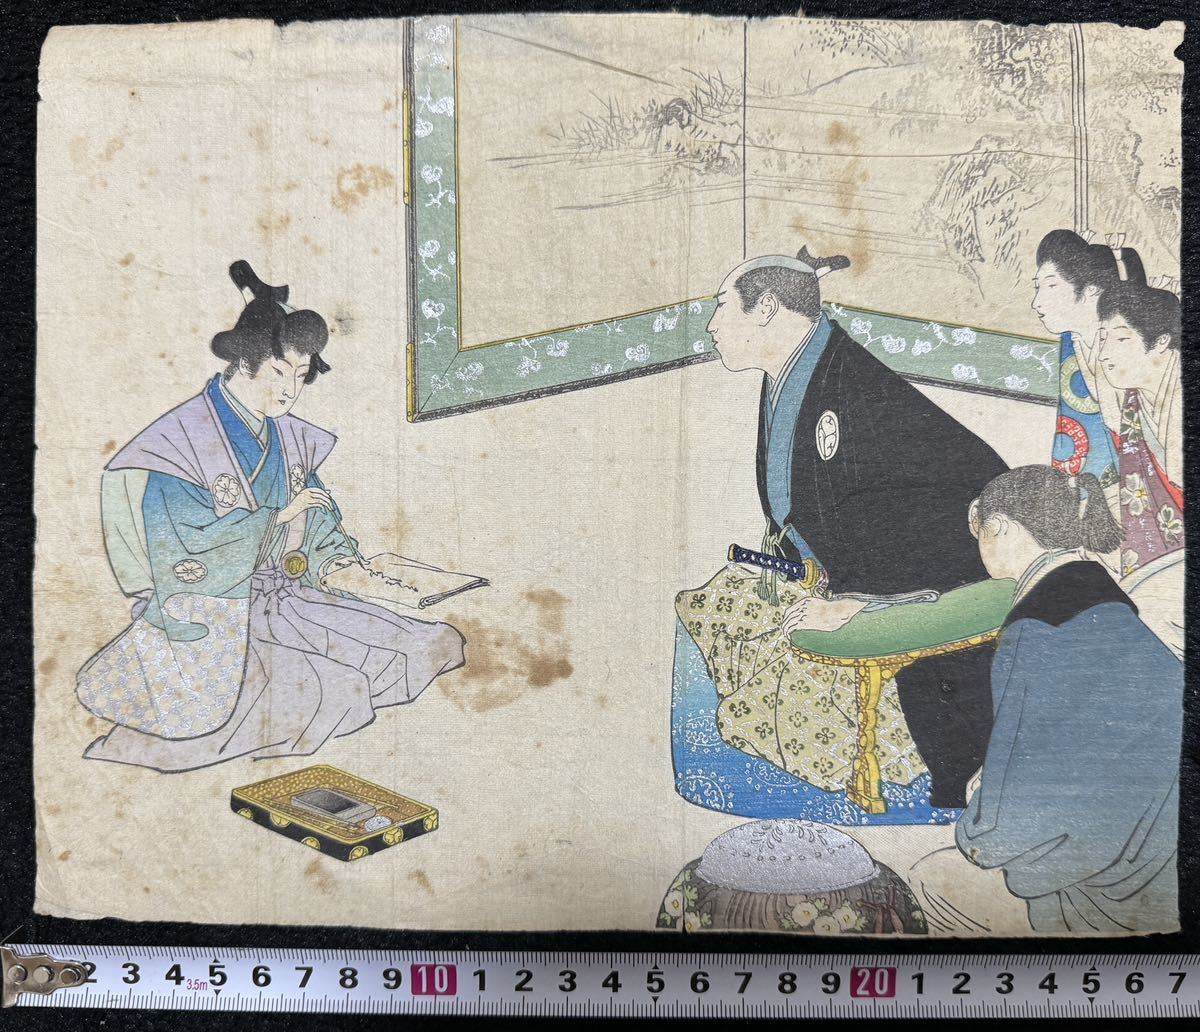 Période Meiji/Frontispice authentique, peinture de guerrier, véritable gravure sur bois ukiyo-e, nishiki-e, taille moyenne, Peinture, Ukiyo-e, Impressions, Peintures de guerriers